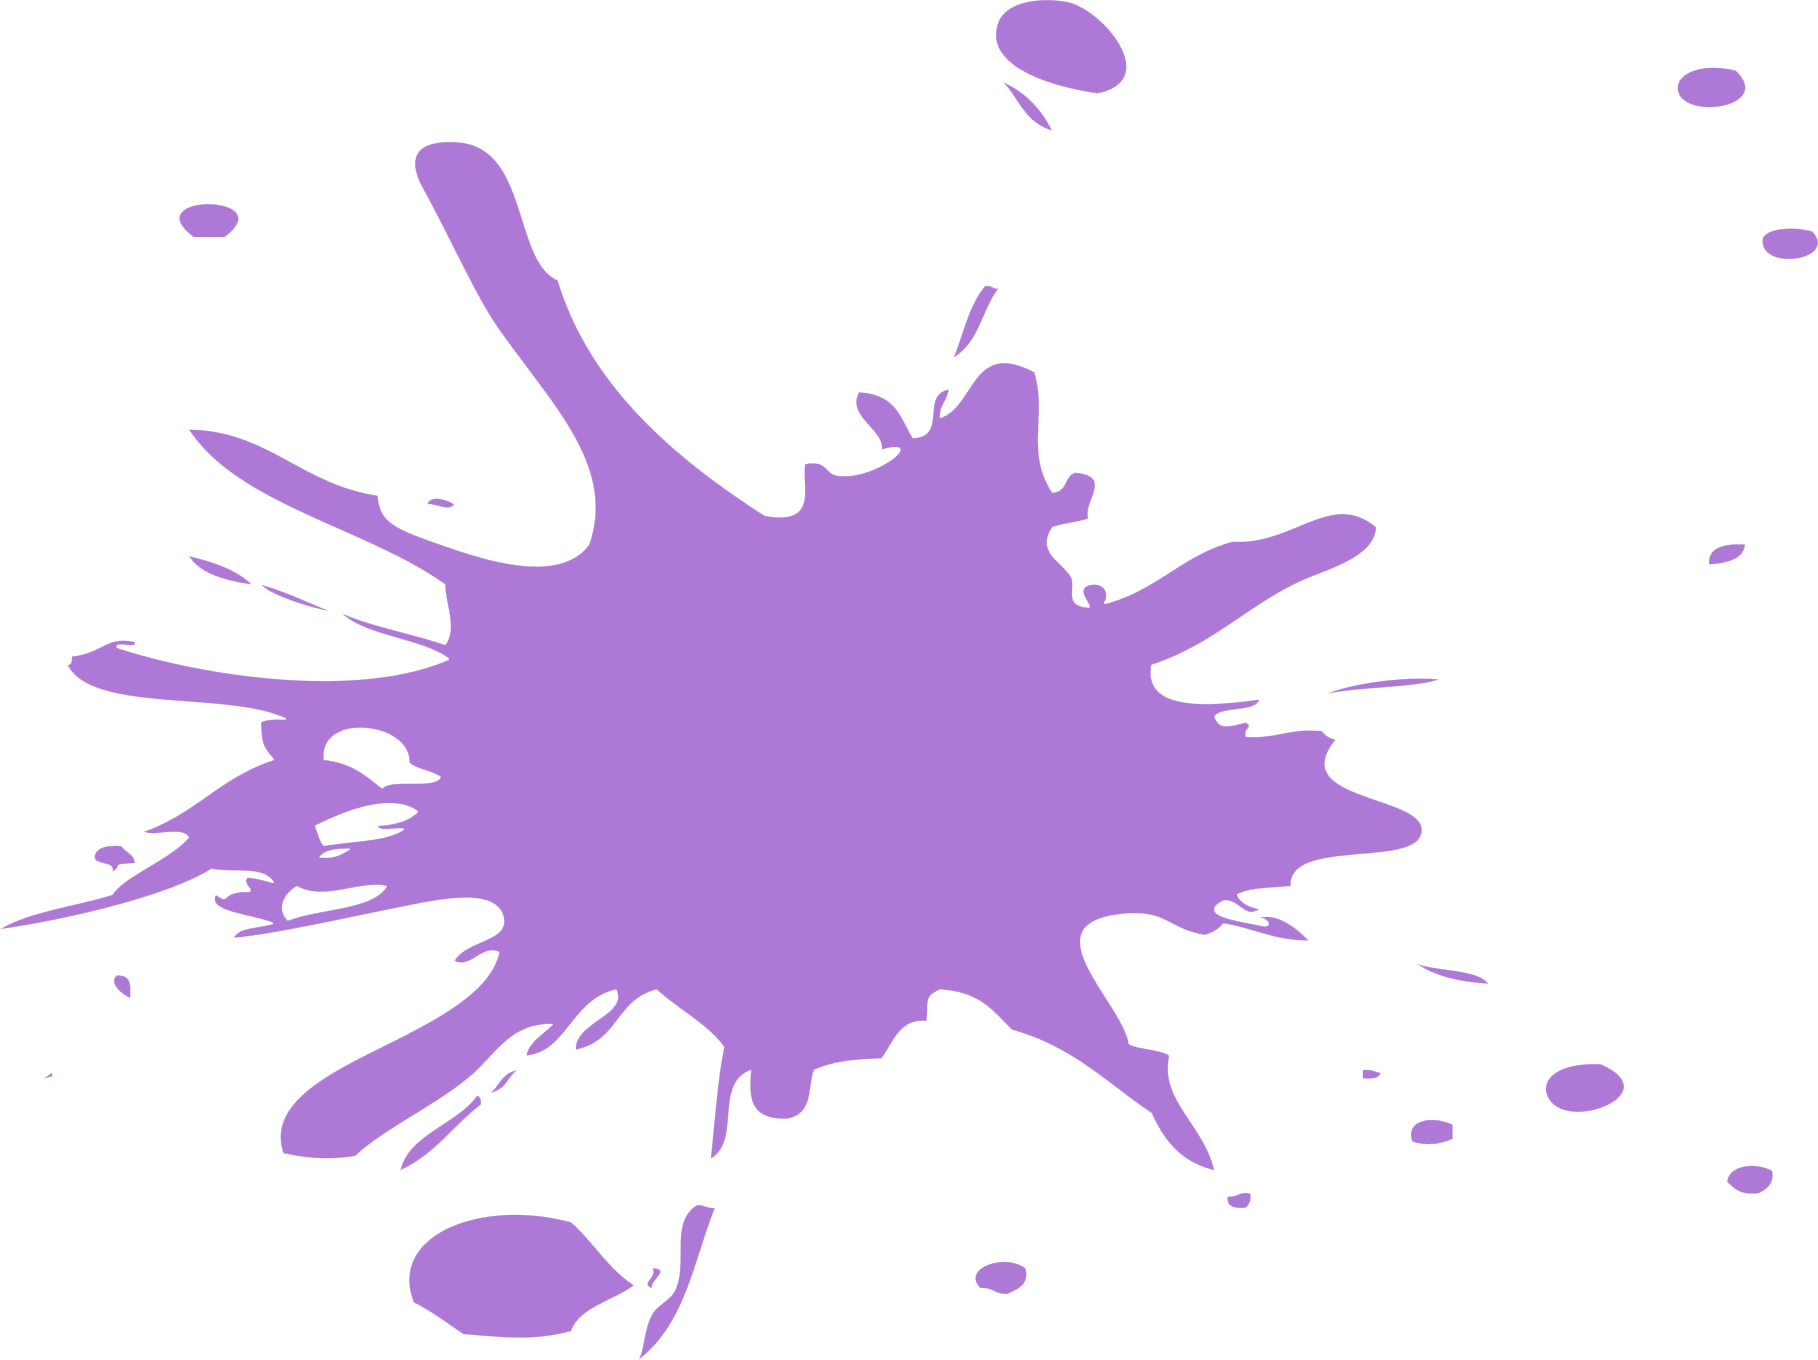 El color violeta o morado en francés